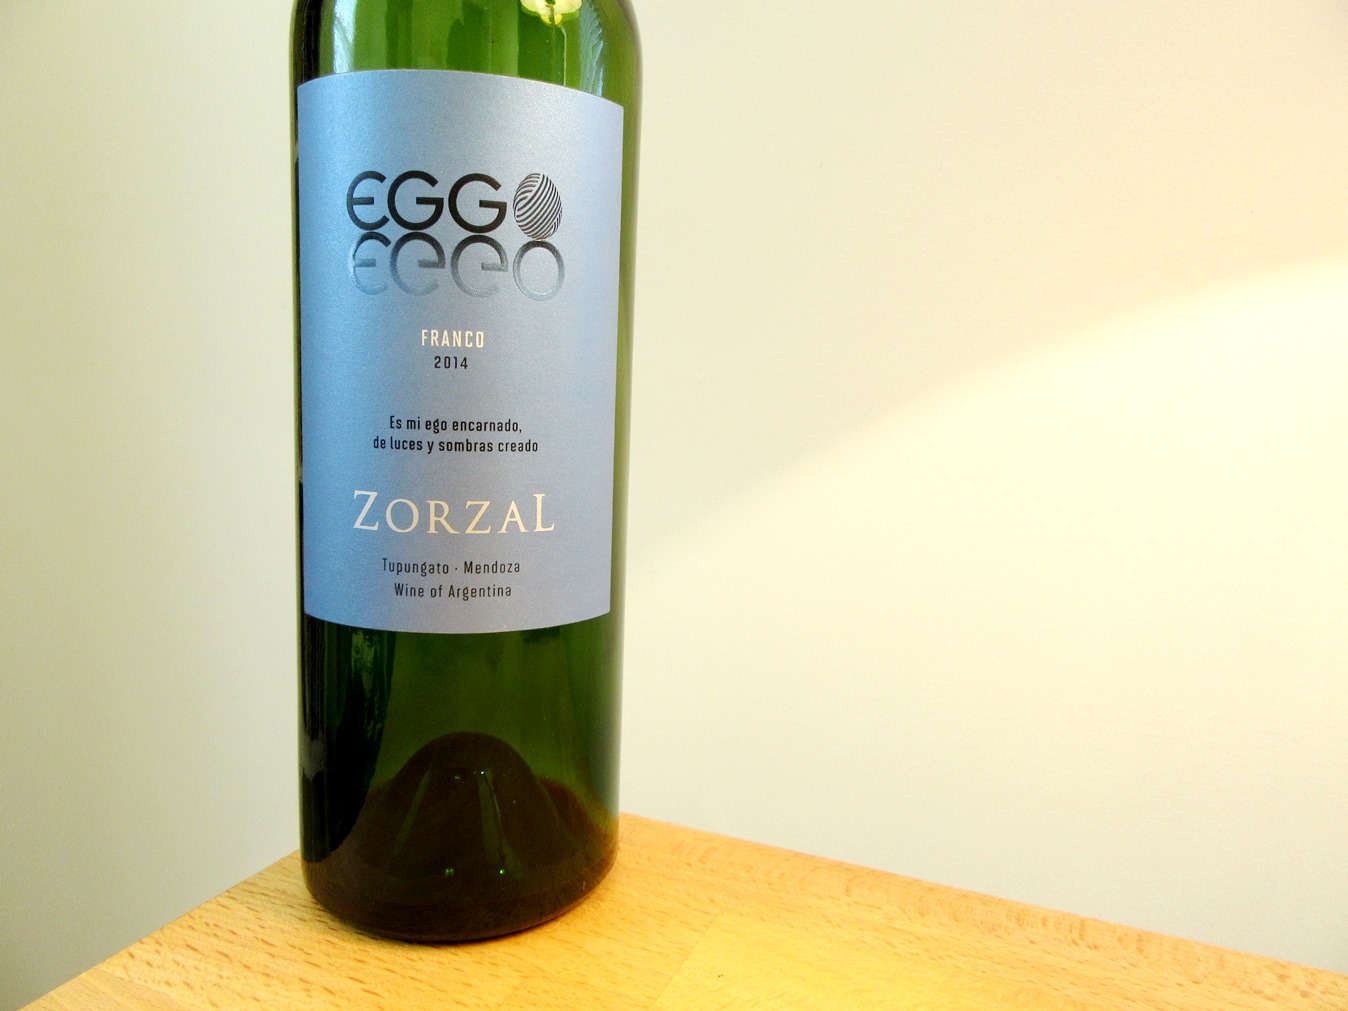 Zorzal, Eggo Franco Cabernet Franc 2014, Tupangato, Argentina, Wine Casual